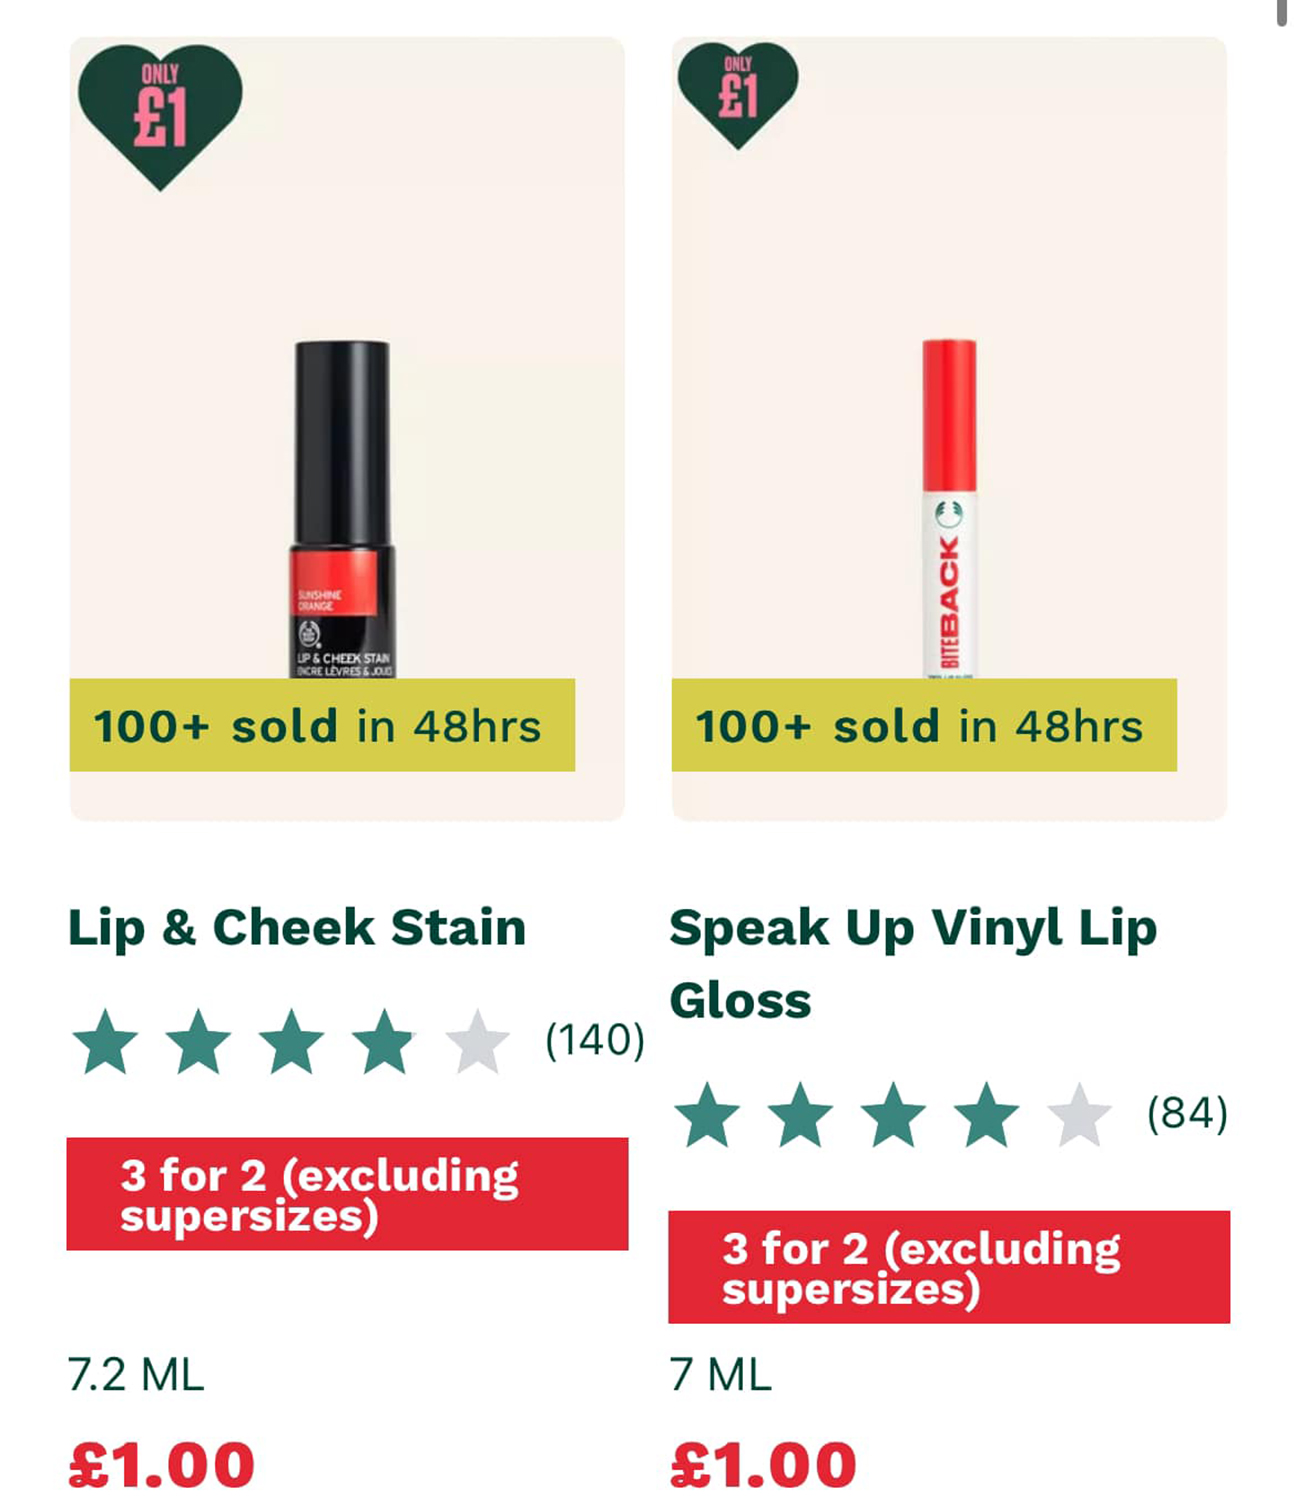 Lippenprodukte werden für nur ein Pfund verkauft